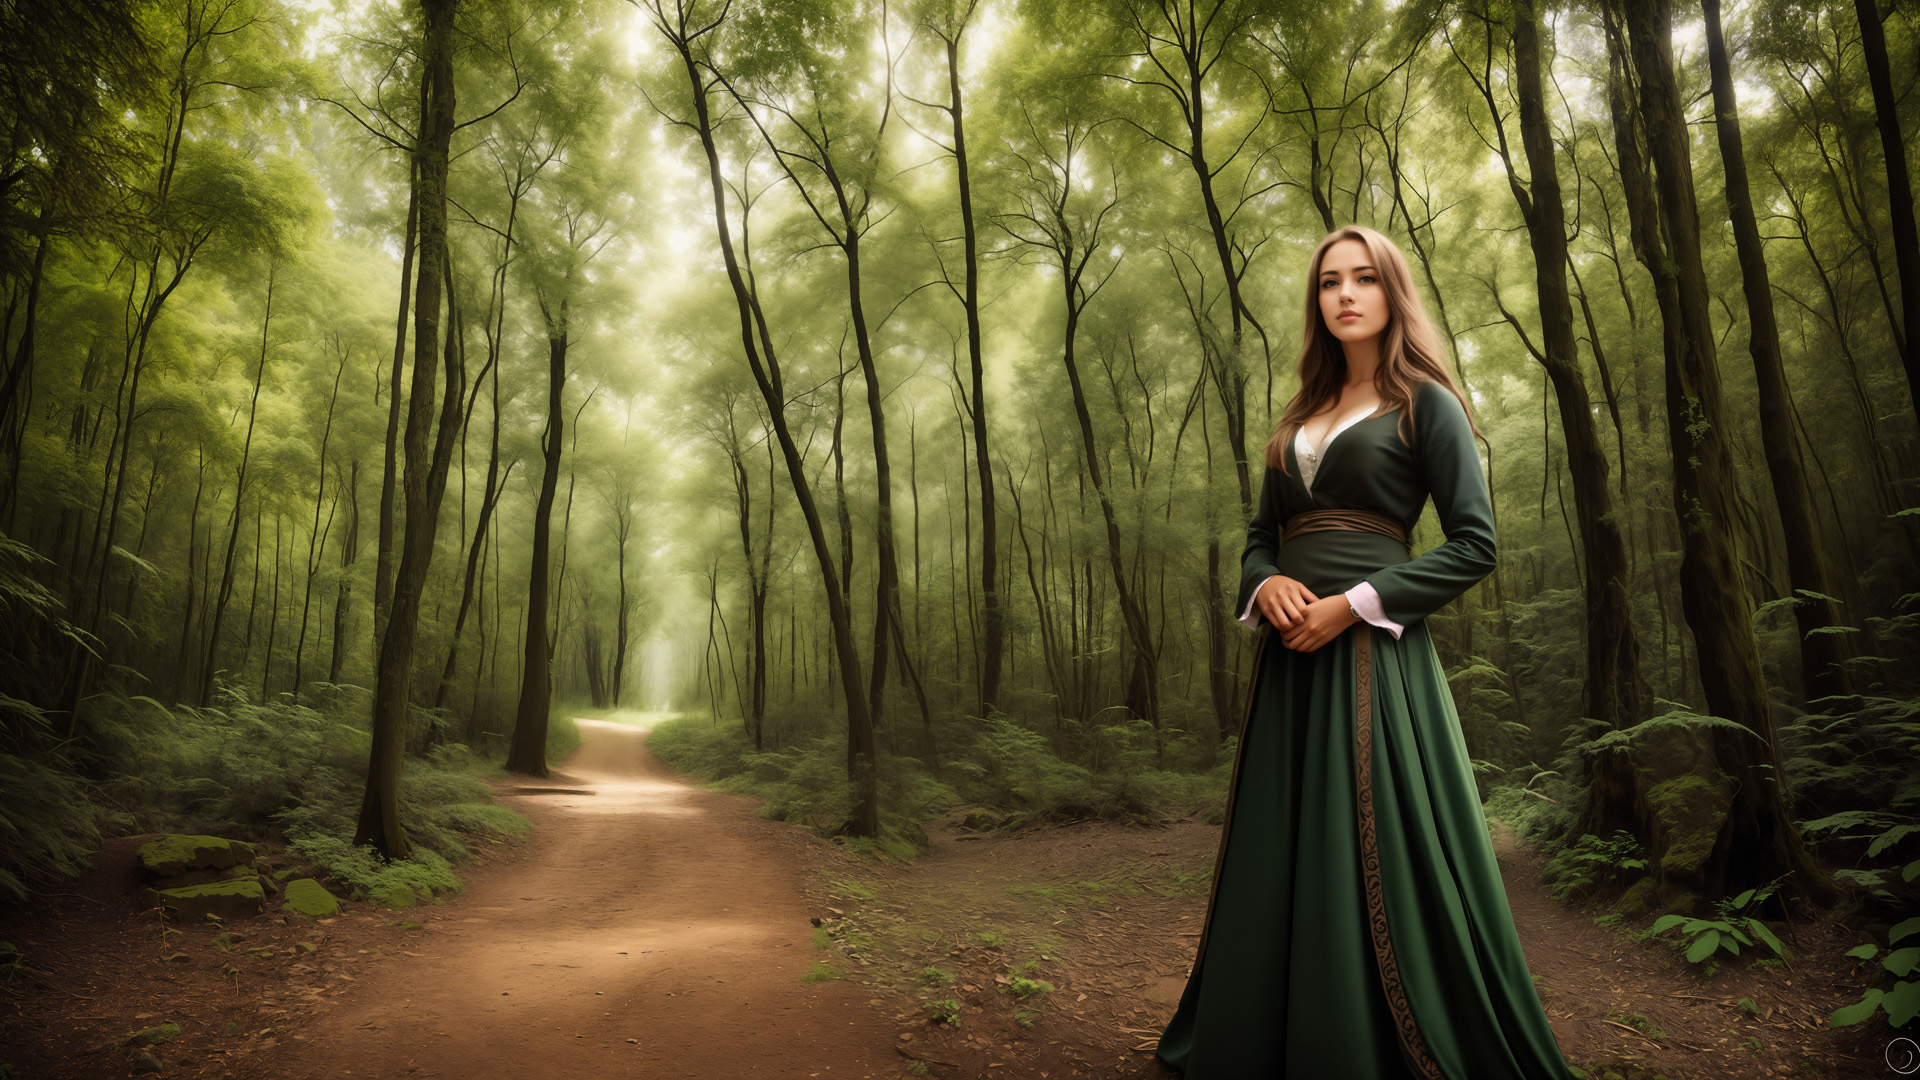 kobieta, zielona sukienka, las, ścieżka, natura, harmonia, spokój, gracja, tajemniczość, piękno, fotografia, zielony, kompozycja, atmosfera, jedność z naturą